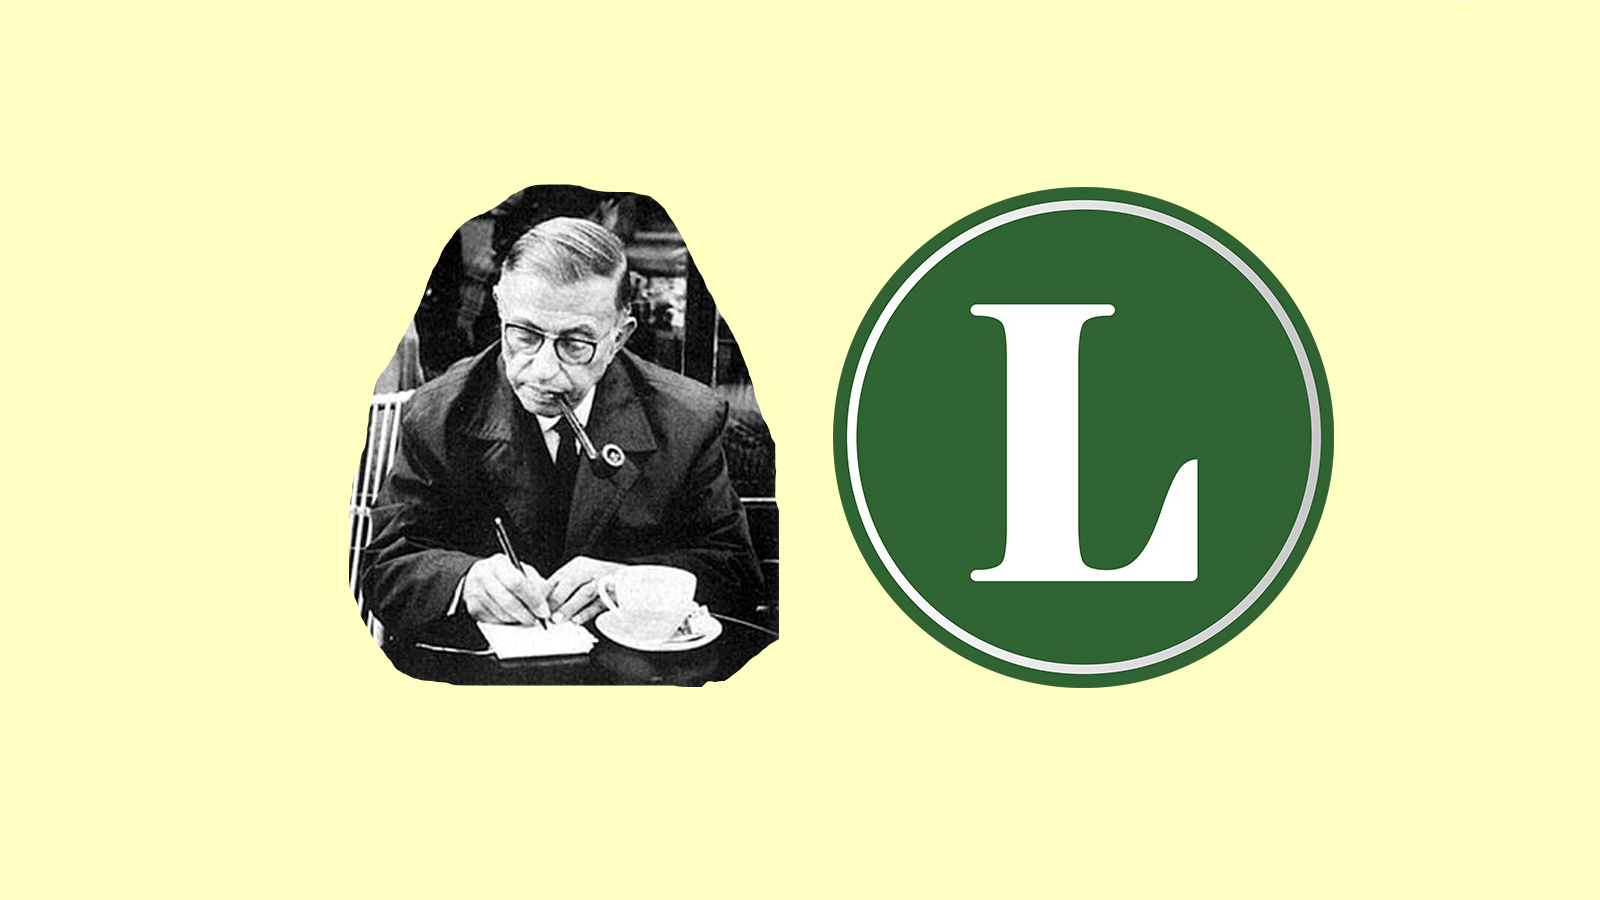 Del lado izquierdo: imagen de Jean Paul Sartre escribiendo en una libreta; del lado derecho, logotipo de Lami sobre un fondo verde; la imágen está sobre un fondo color beige